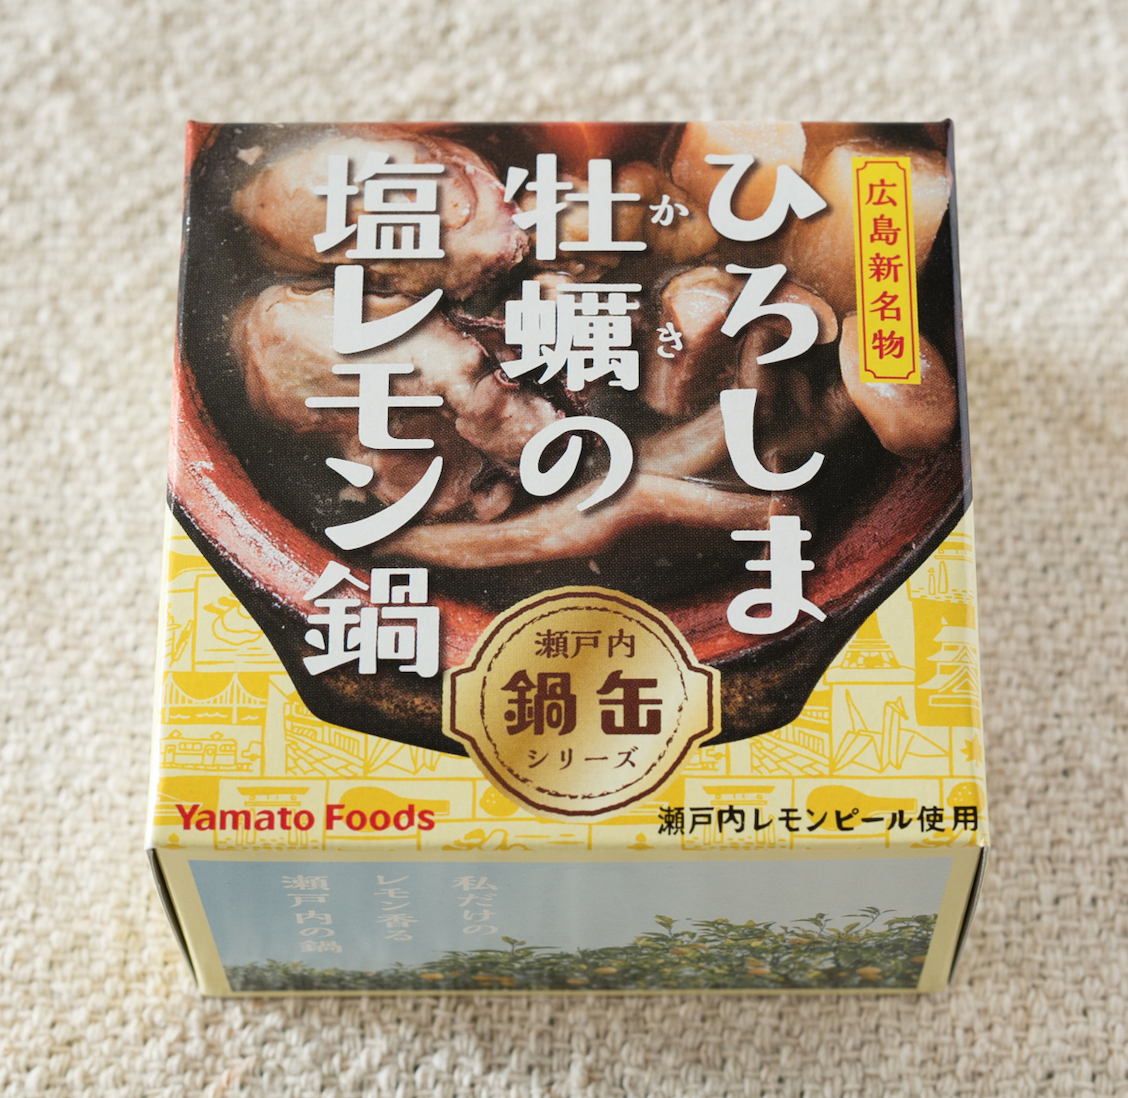 広島の新名物「レモン鍋」が缶詰で登場